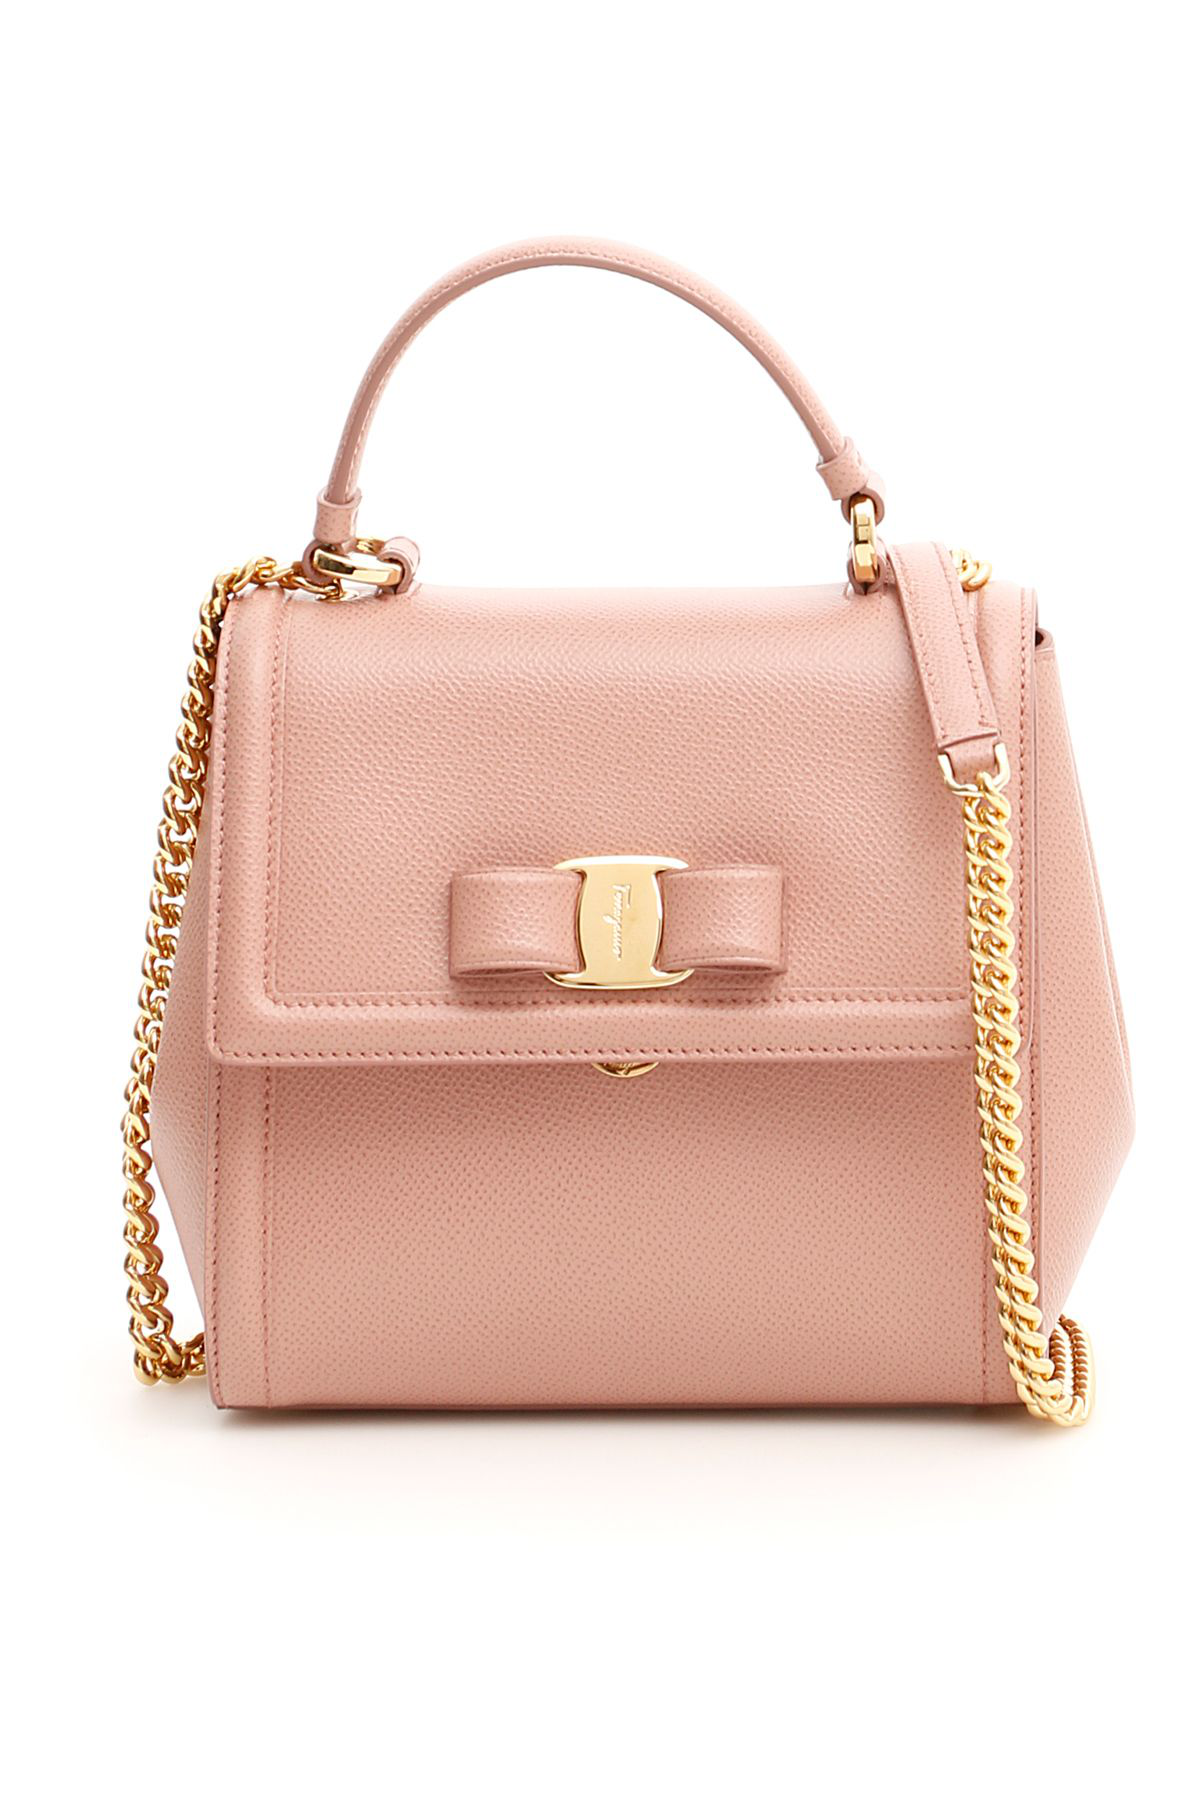 Salvatore Ferragamo Carrie Bag In Pink (pink) | ModeSens